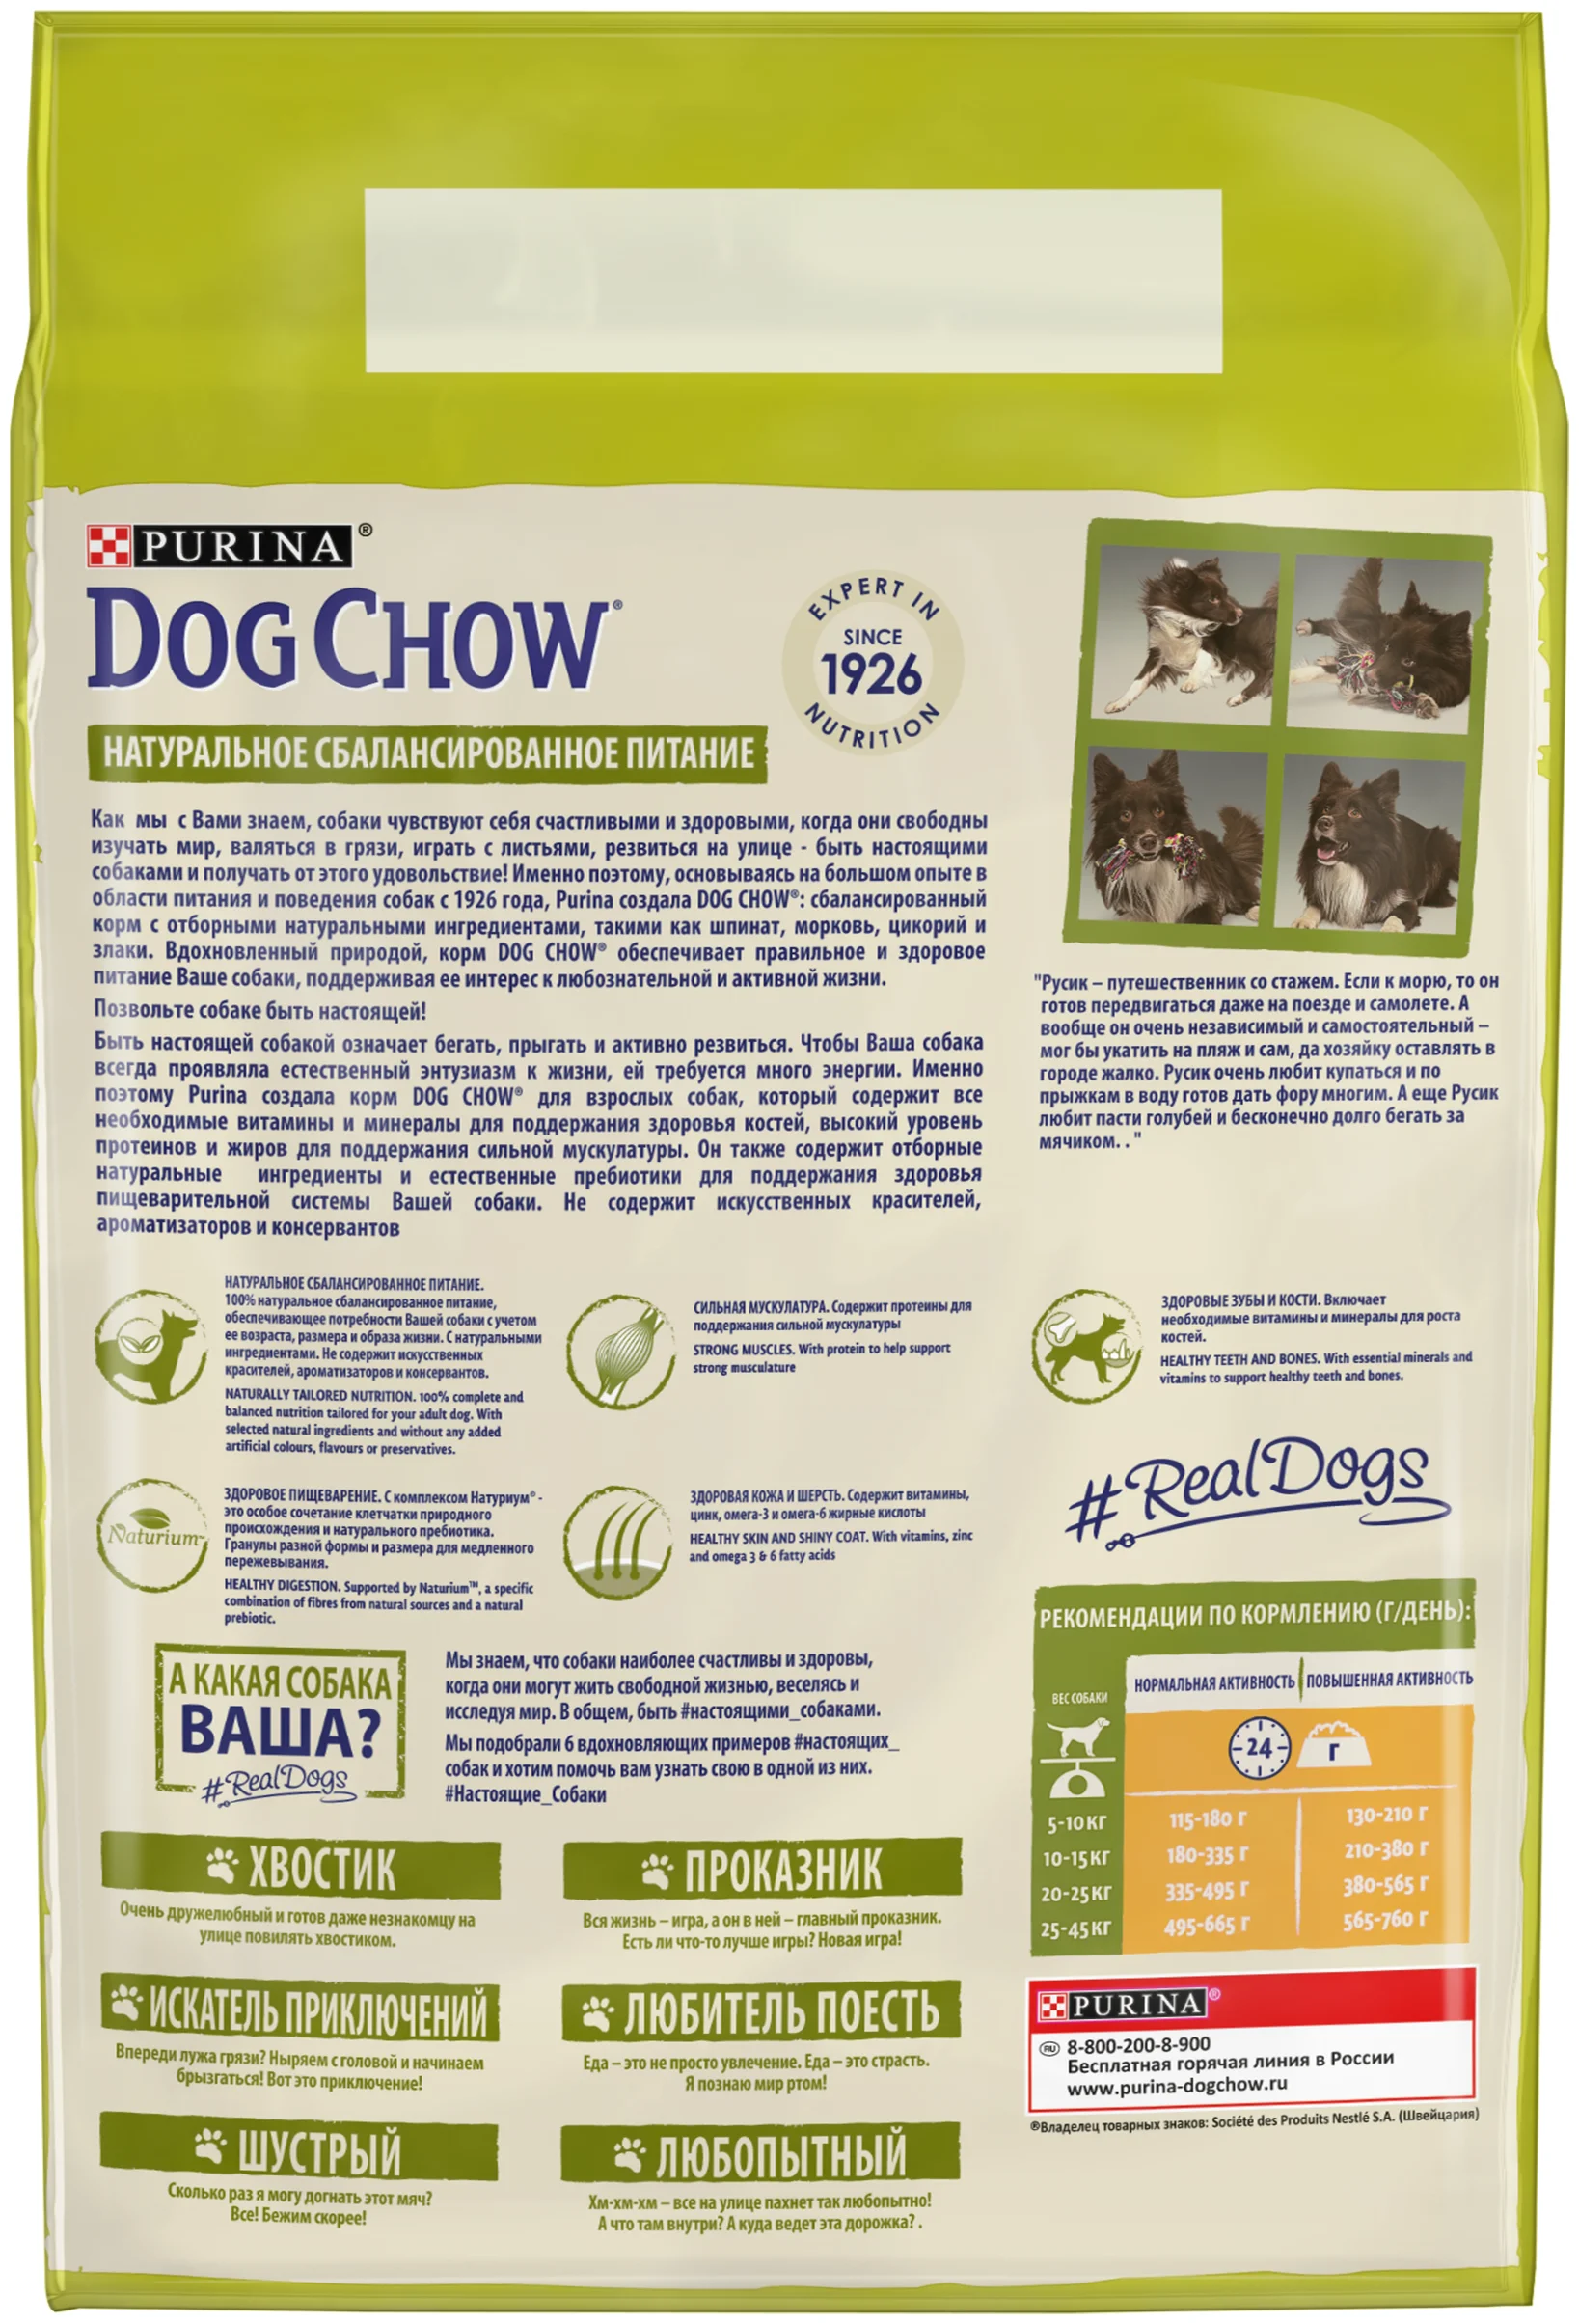 DOG CHOW - особые потребности: для здоровья кожи и шерсти